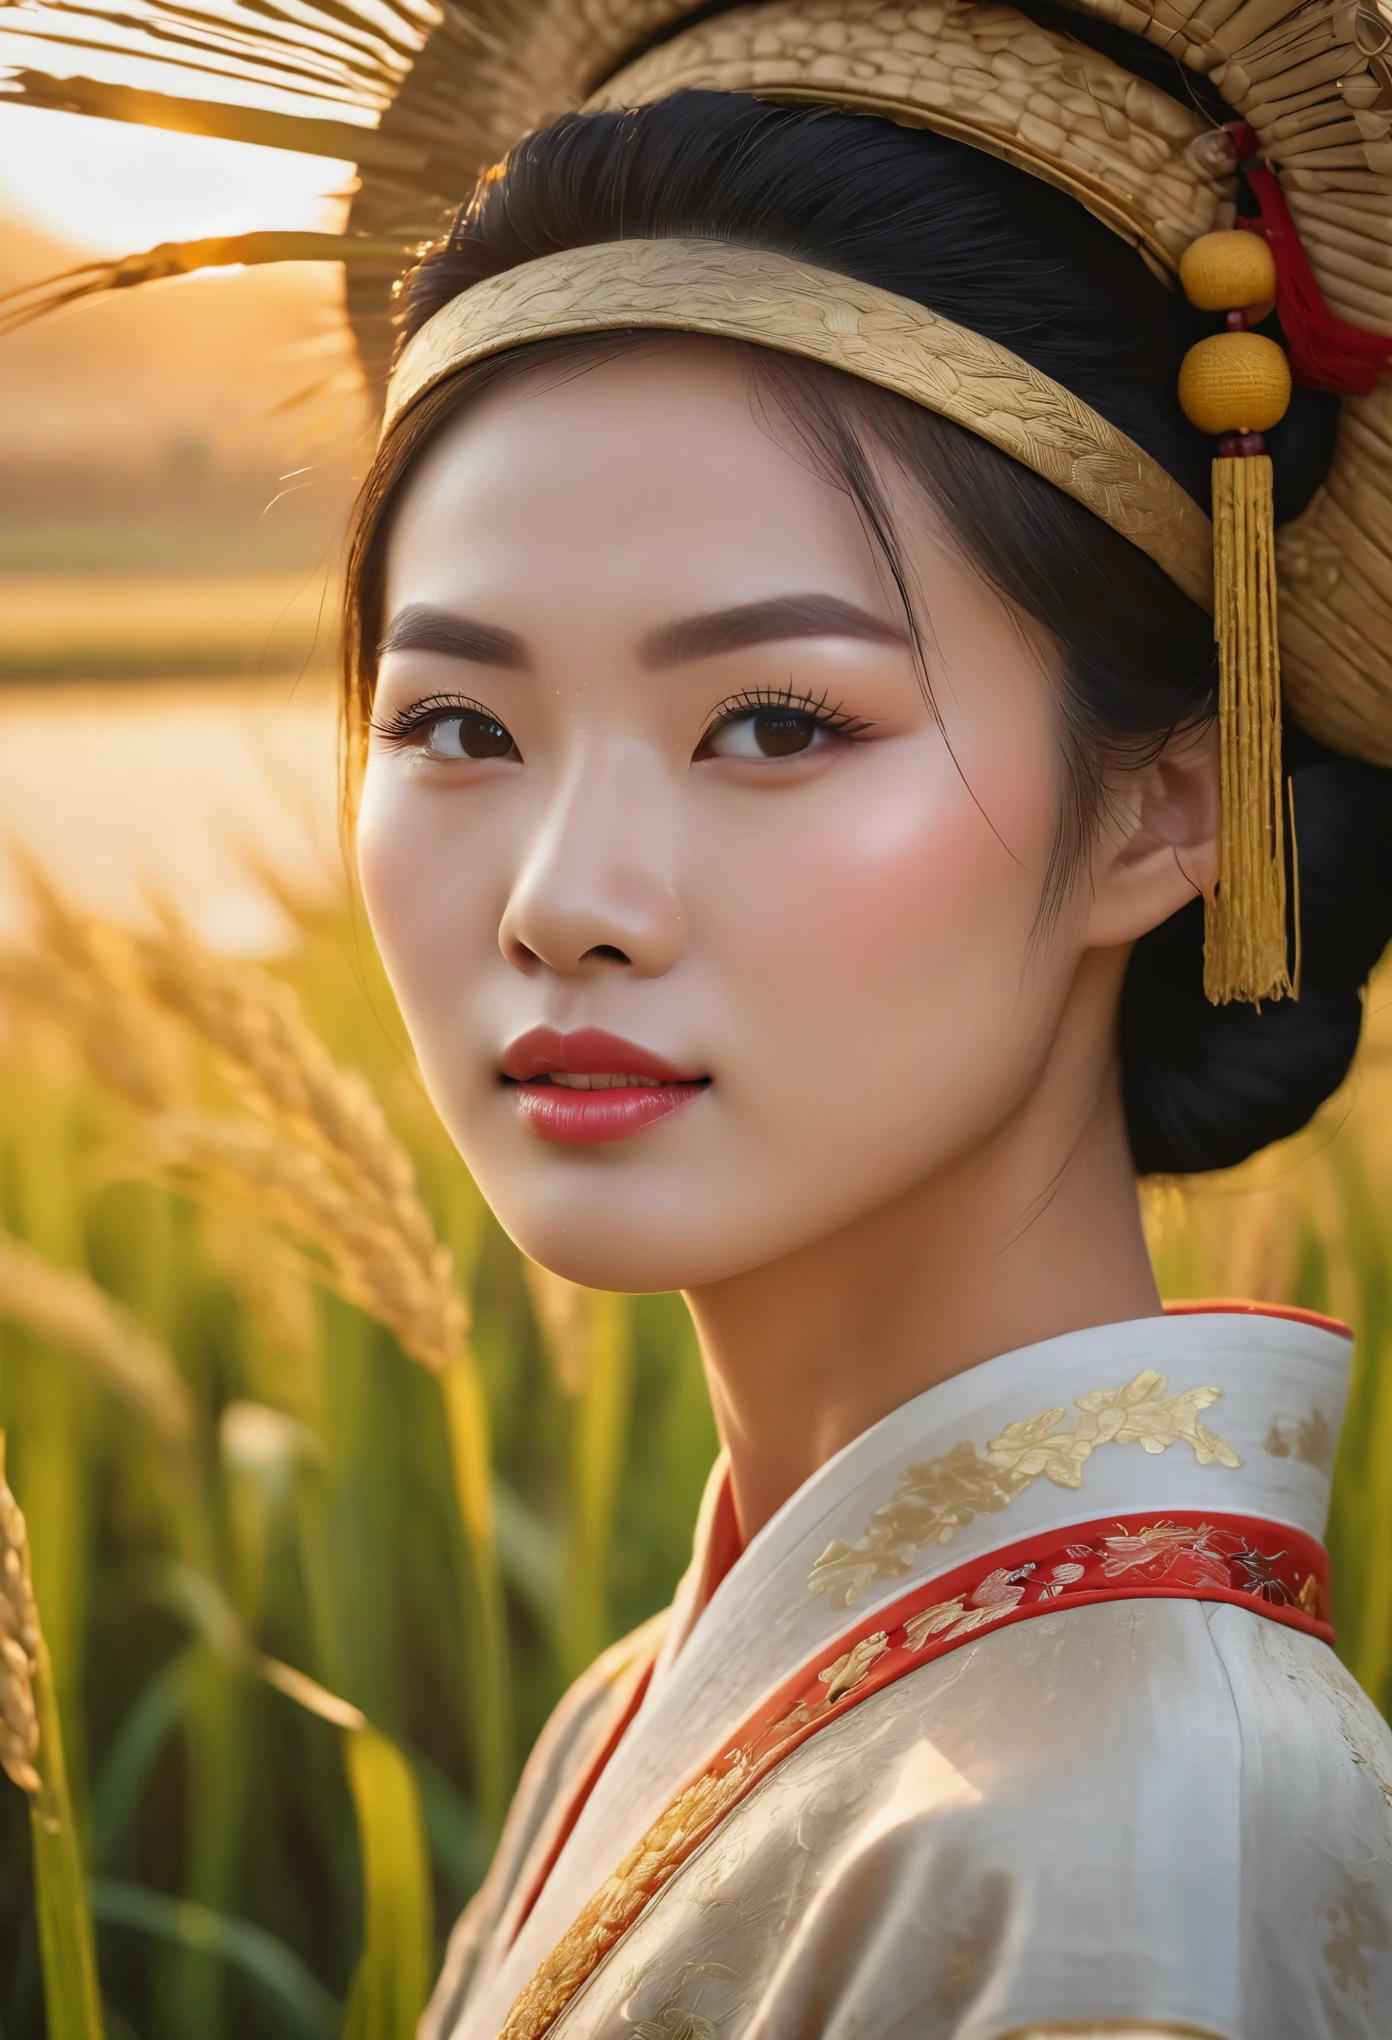 شروق الشمس الجميل فوق حقول الأرز في الصين, مزارعون صينيون يحصدون الأرز, عيون مفصلة جميلة, شفاه مفصلة جميلة, عيون ووجه مفصلة للغاية, رموش طويلة, الملابس الصينية التقليدية, المناظر الطبيعية الريفية الهادئة, إضاءة الساعة الذهبية, نغمات الألوان الدافئة, التركيز الناعم, واقعية, 8 كيلو, دقة عالية, تحفة, مفصلة للغاية, التصوير الفوتوغرافي الاحترافي, ألوان نابضة بالحياة, الإضاءة الطبيعية, التركيبة السينمائية